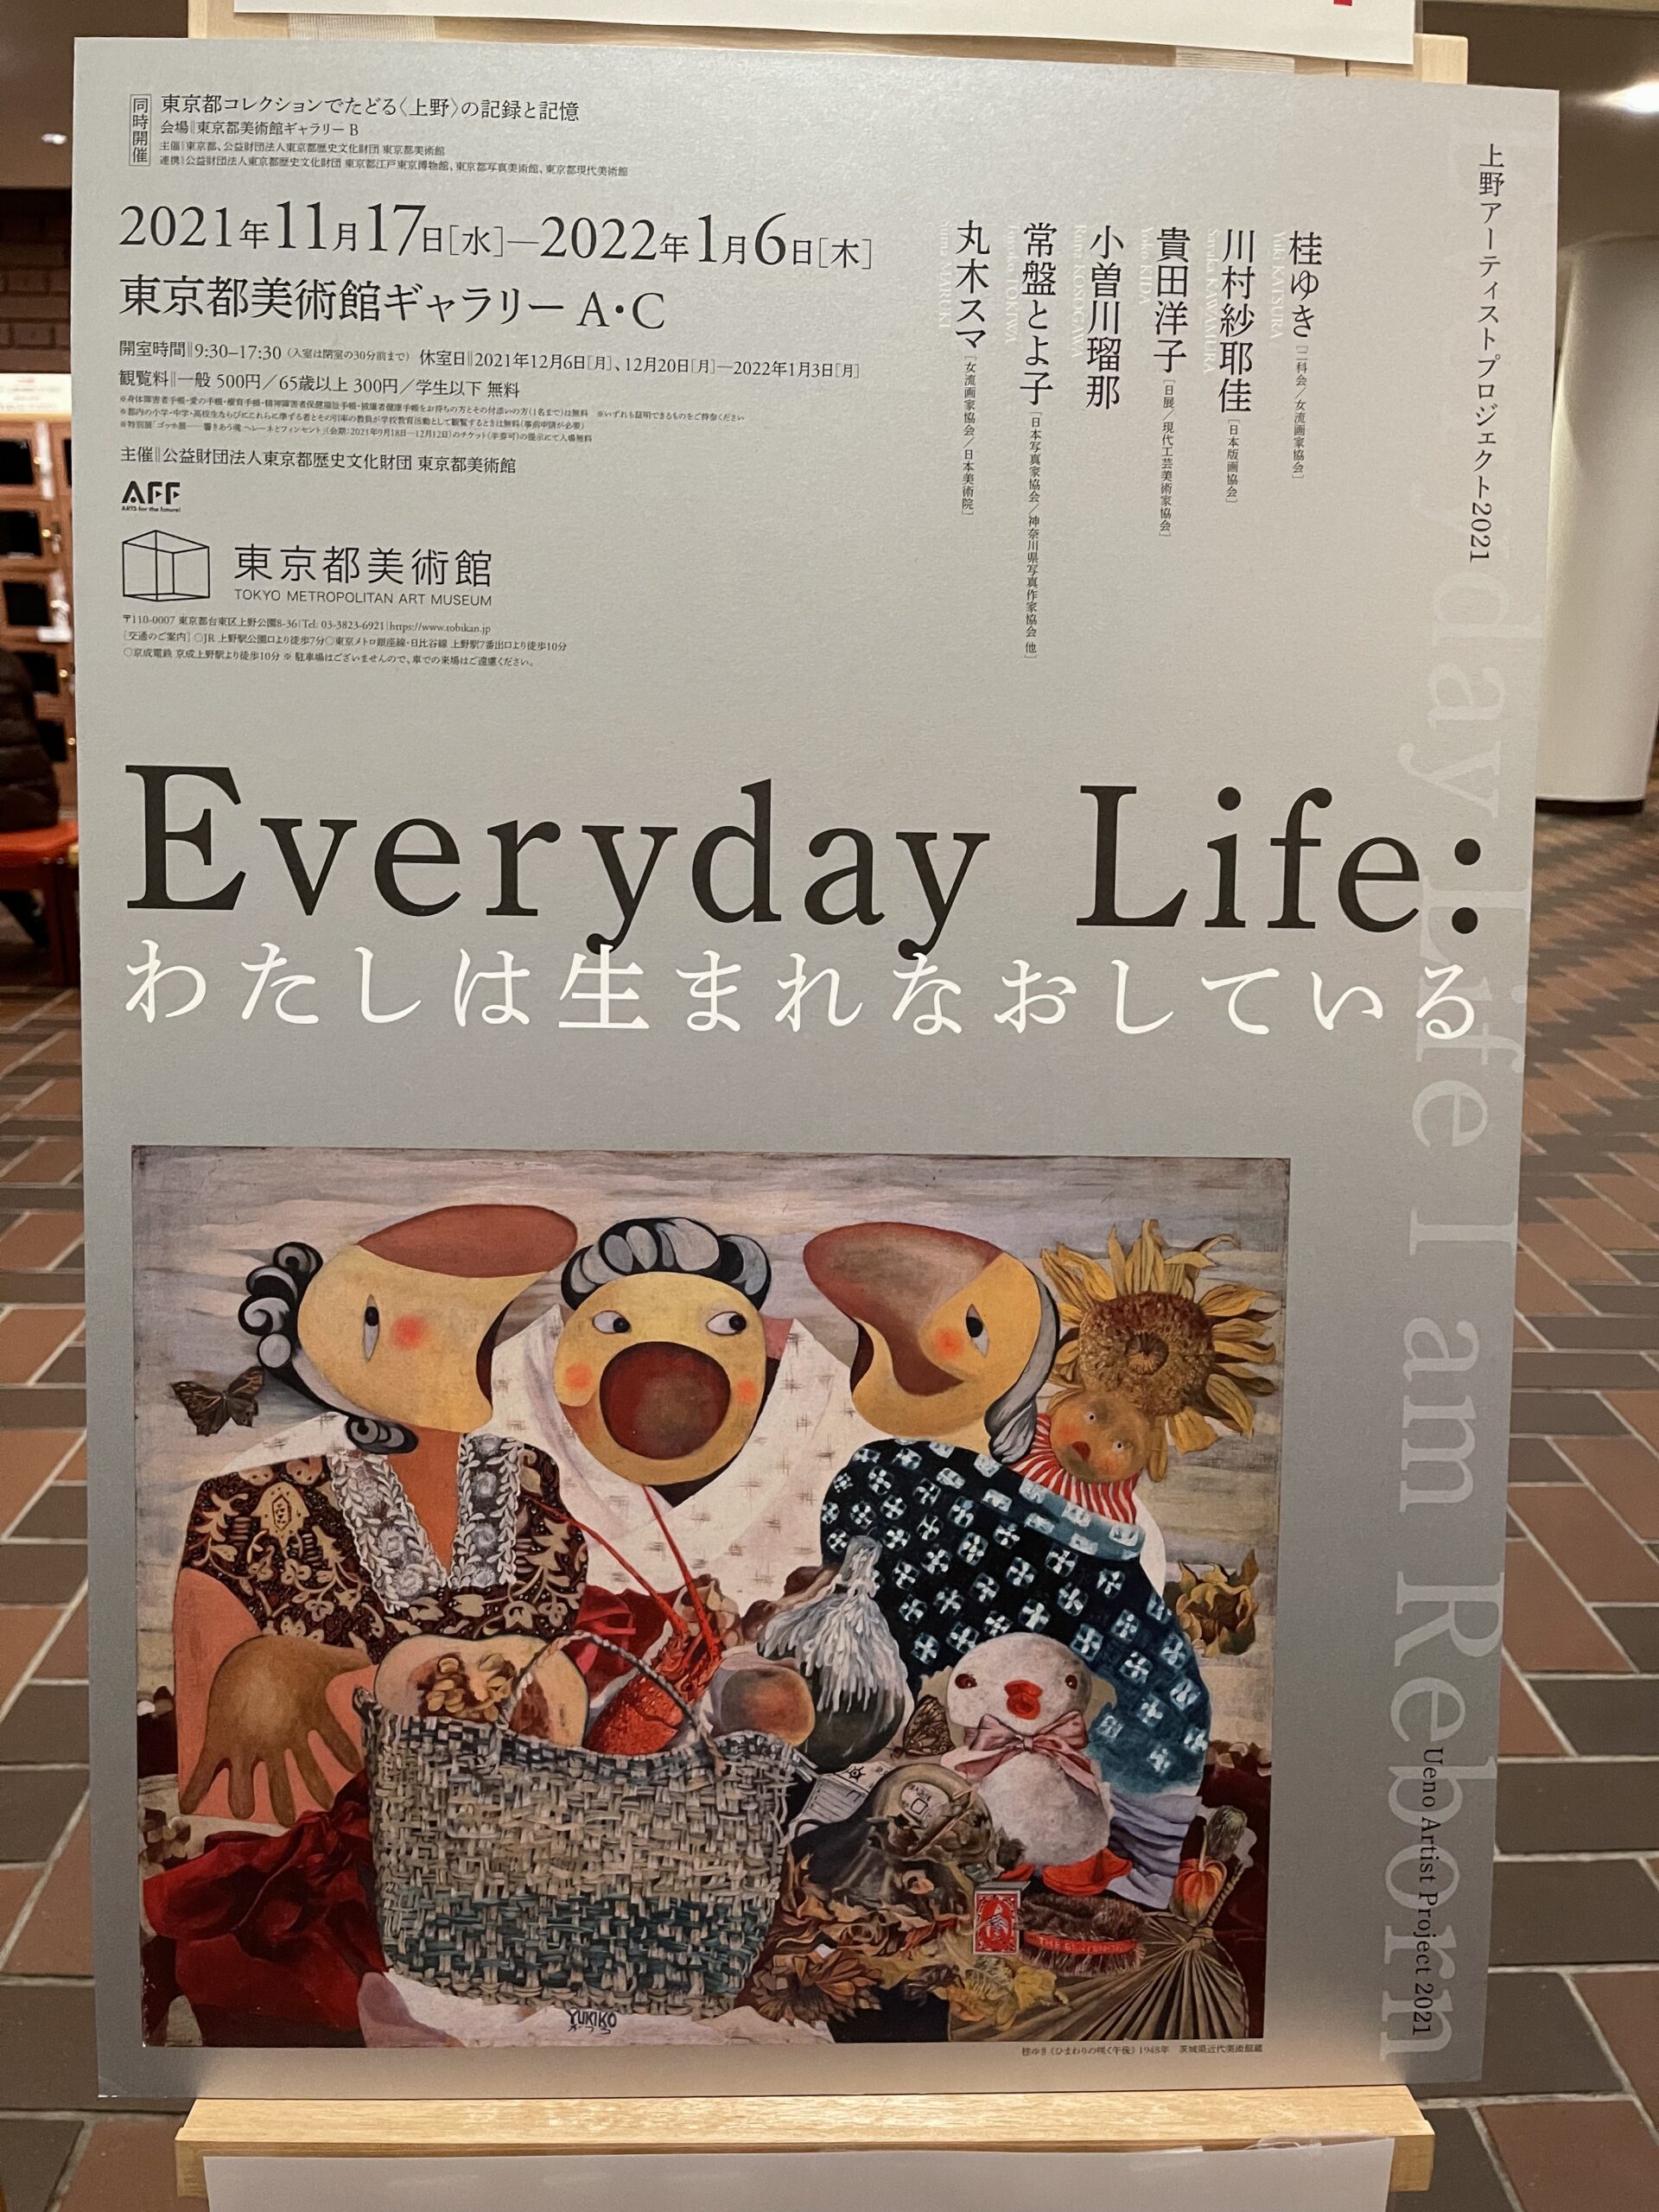 東京都美術館「Everyday Life」